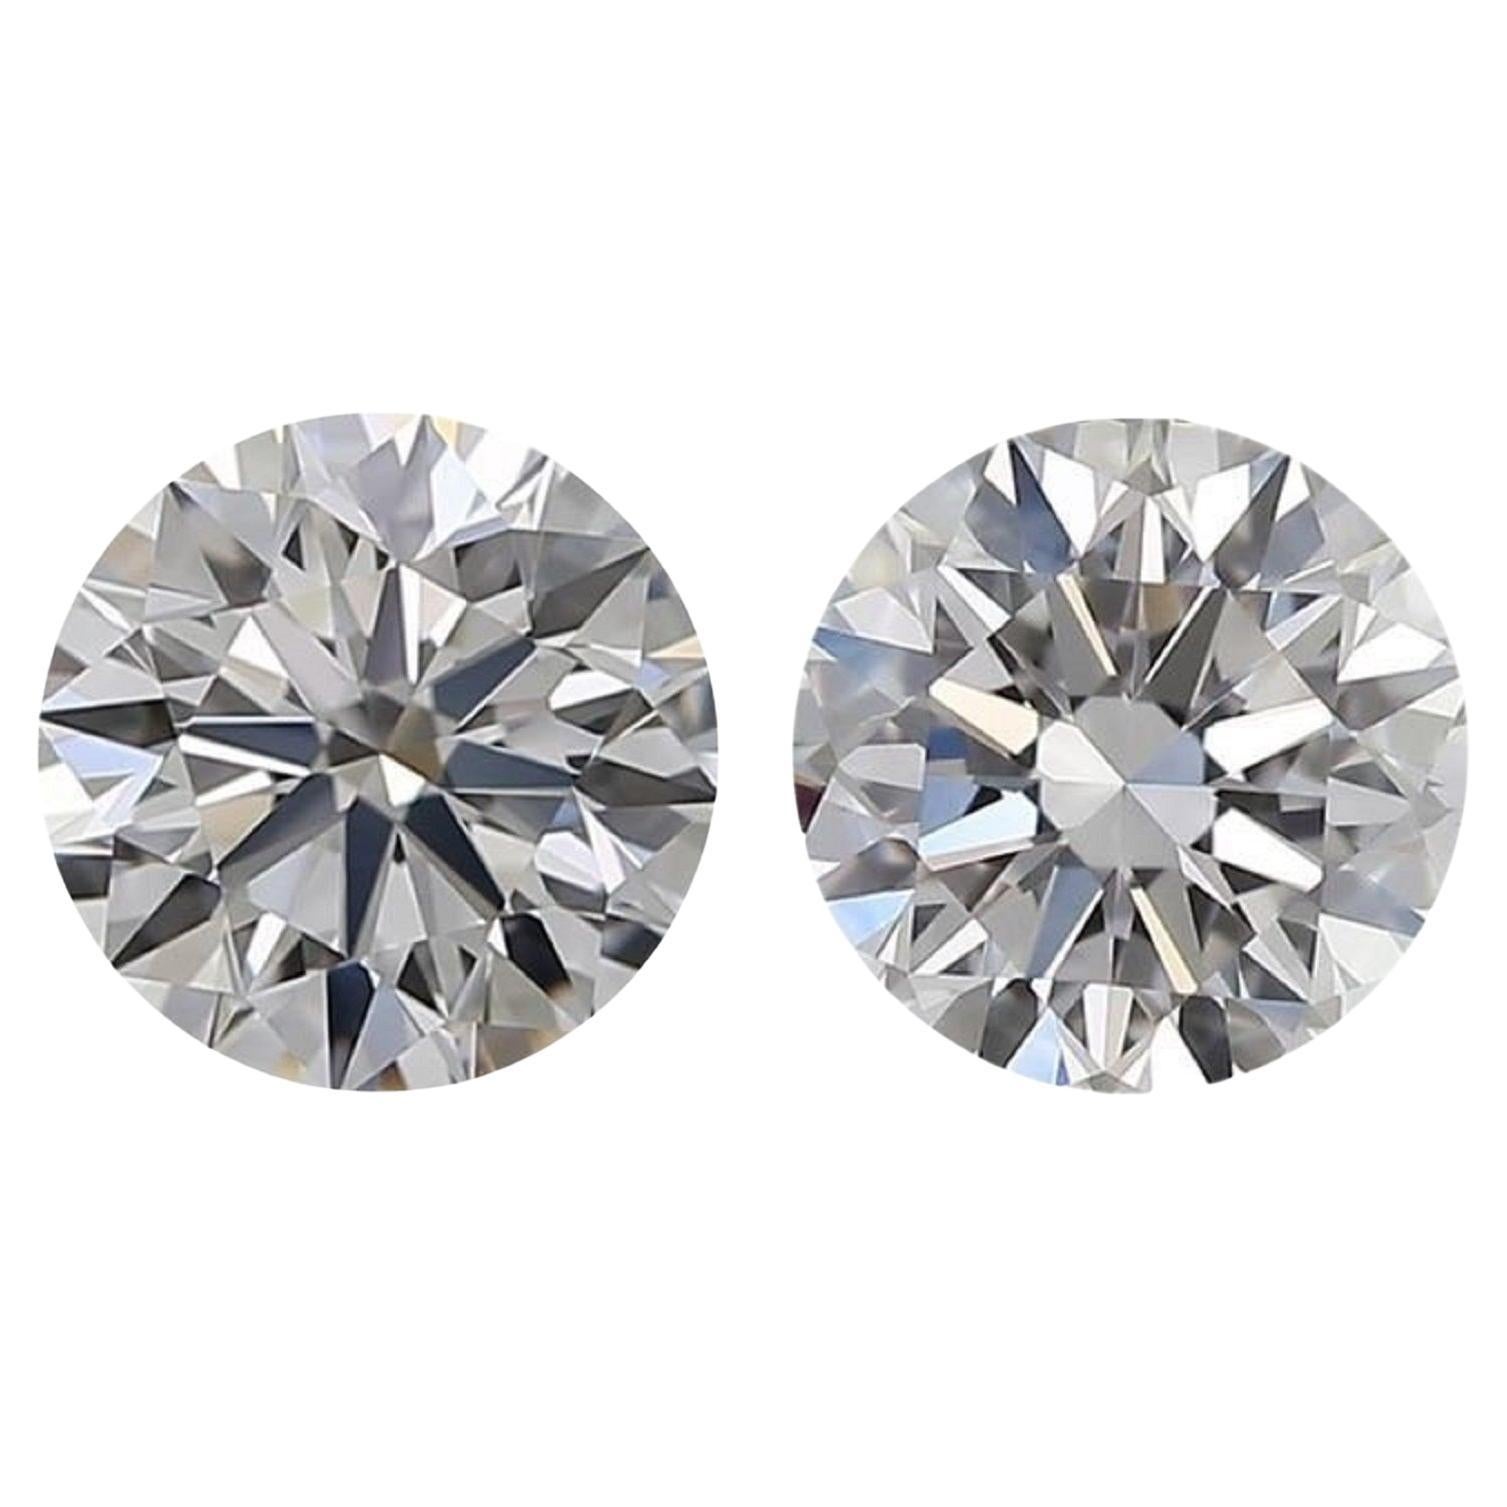 Éblouissante paire de diamants naturels de 1,80 carat de taille ronde H VVS1, certifiés GIA